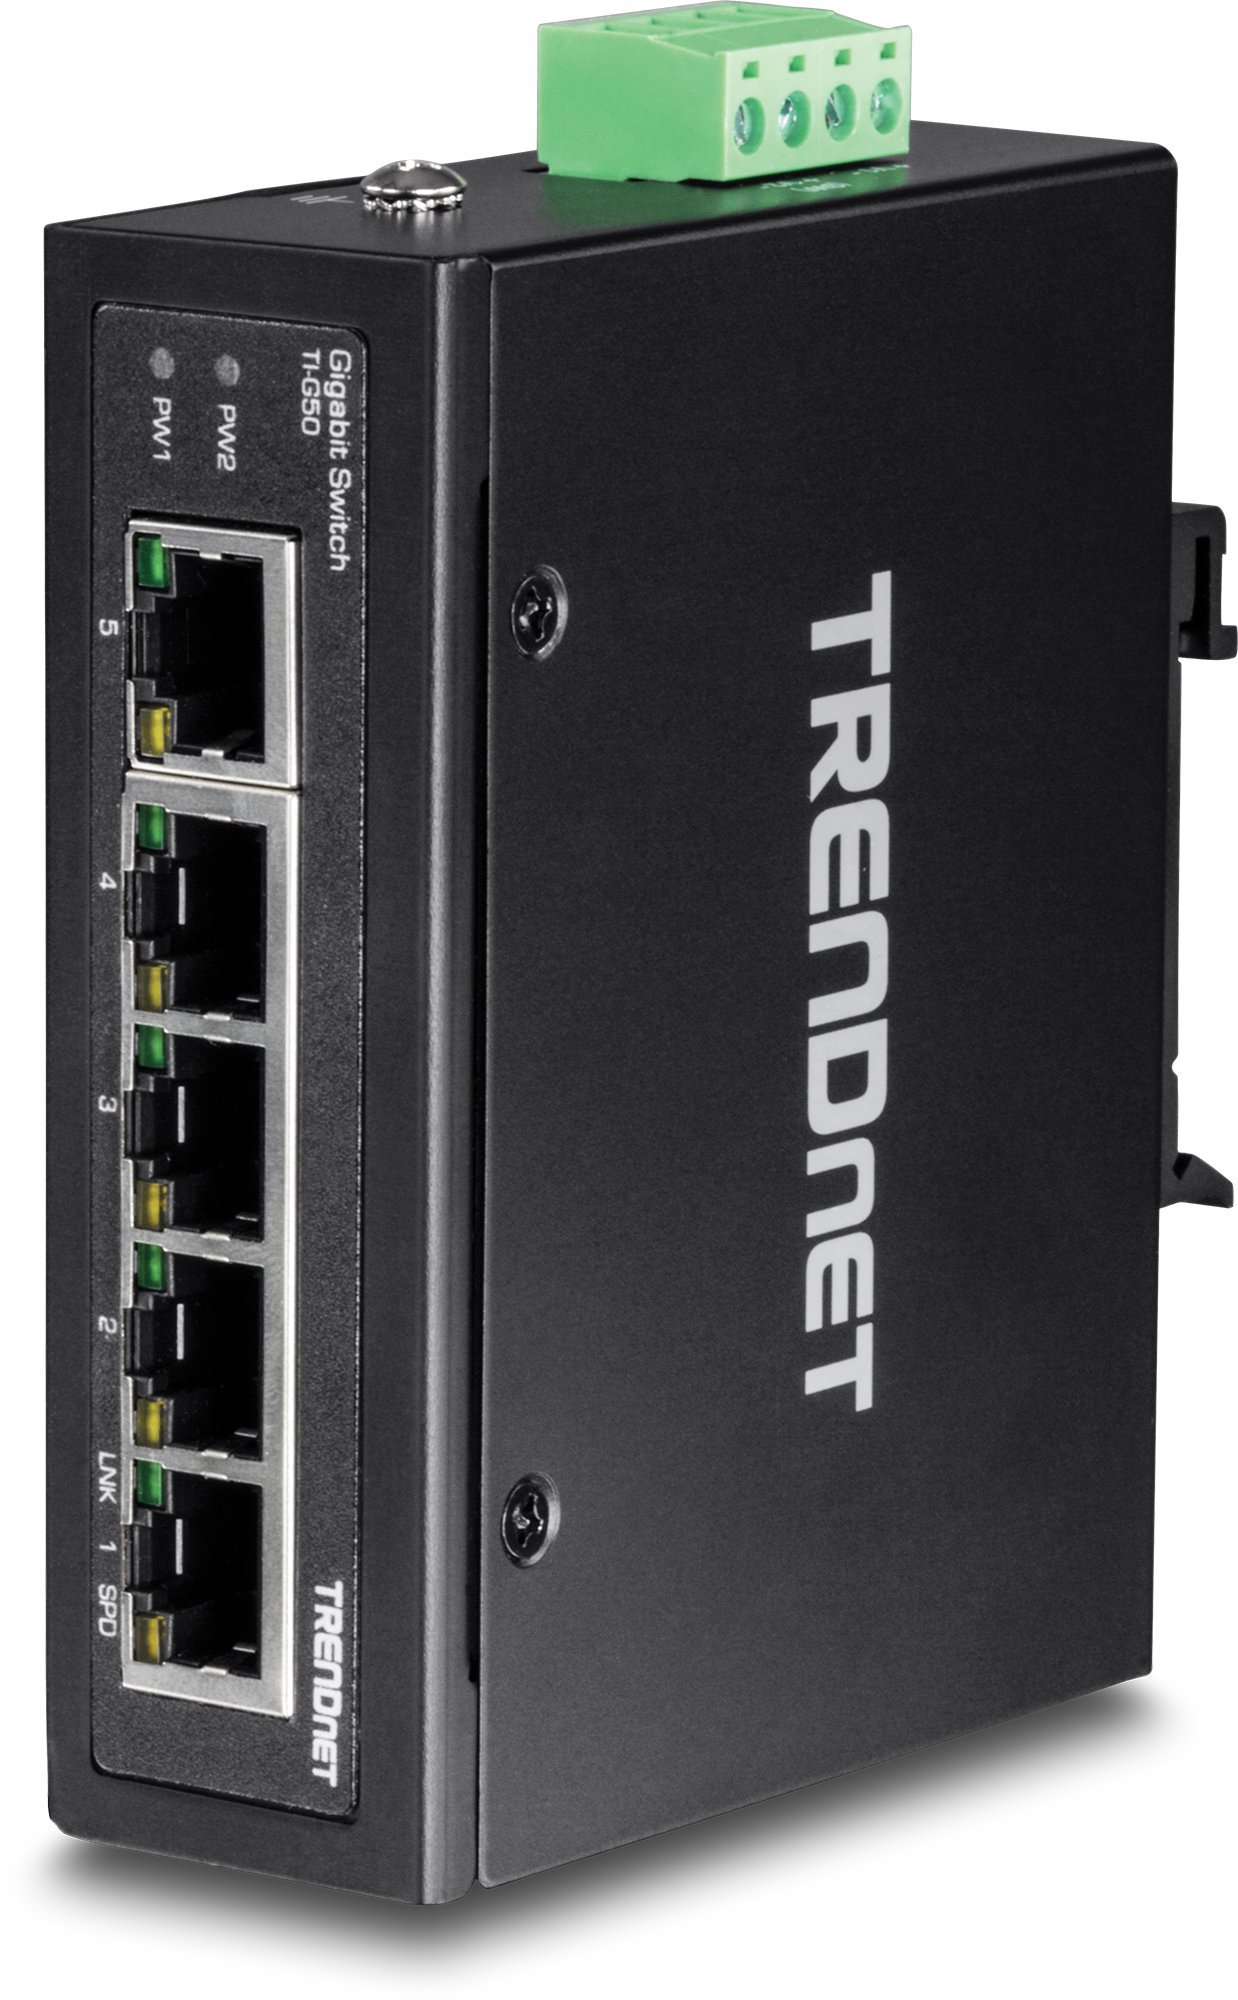 TRENDnet TI-G50 5-Port gehärteter industrieller Gigabit-DIN-Schienen-Switch, 10-Gbit / s-Schaltkapazität, IP30-Gigabit-Netzwerk-Switch DIN-Schienen- und Wandhalterungen enthalten